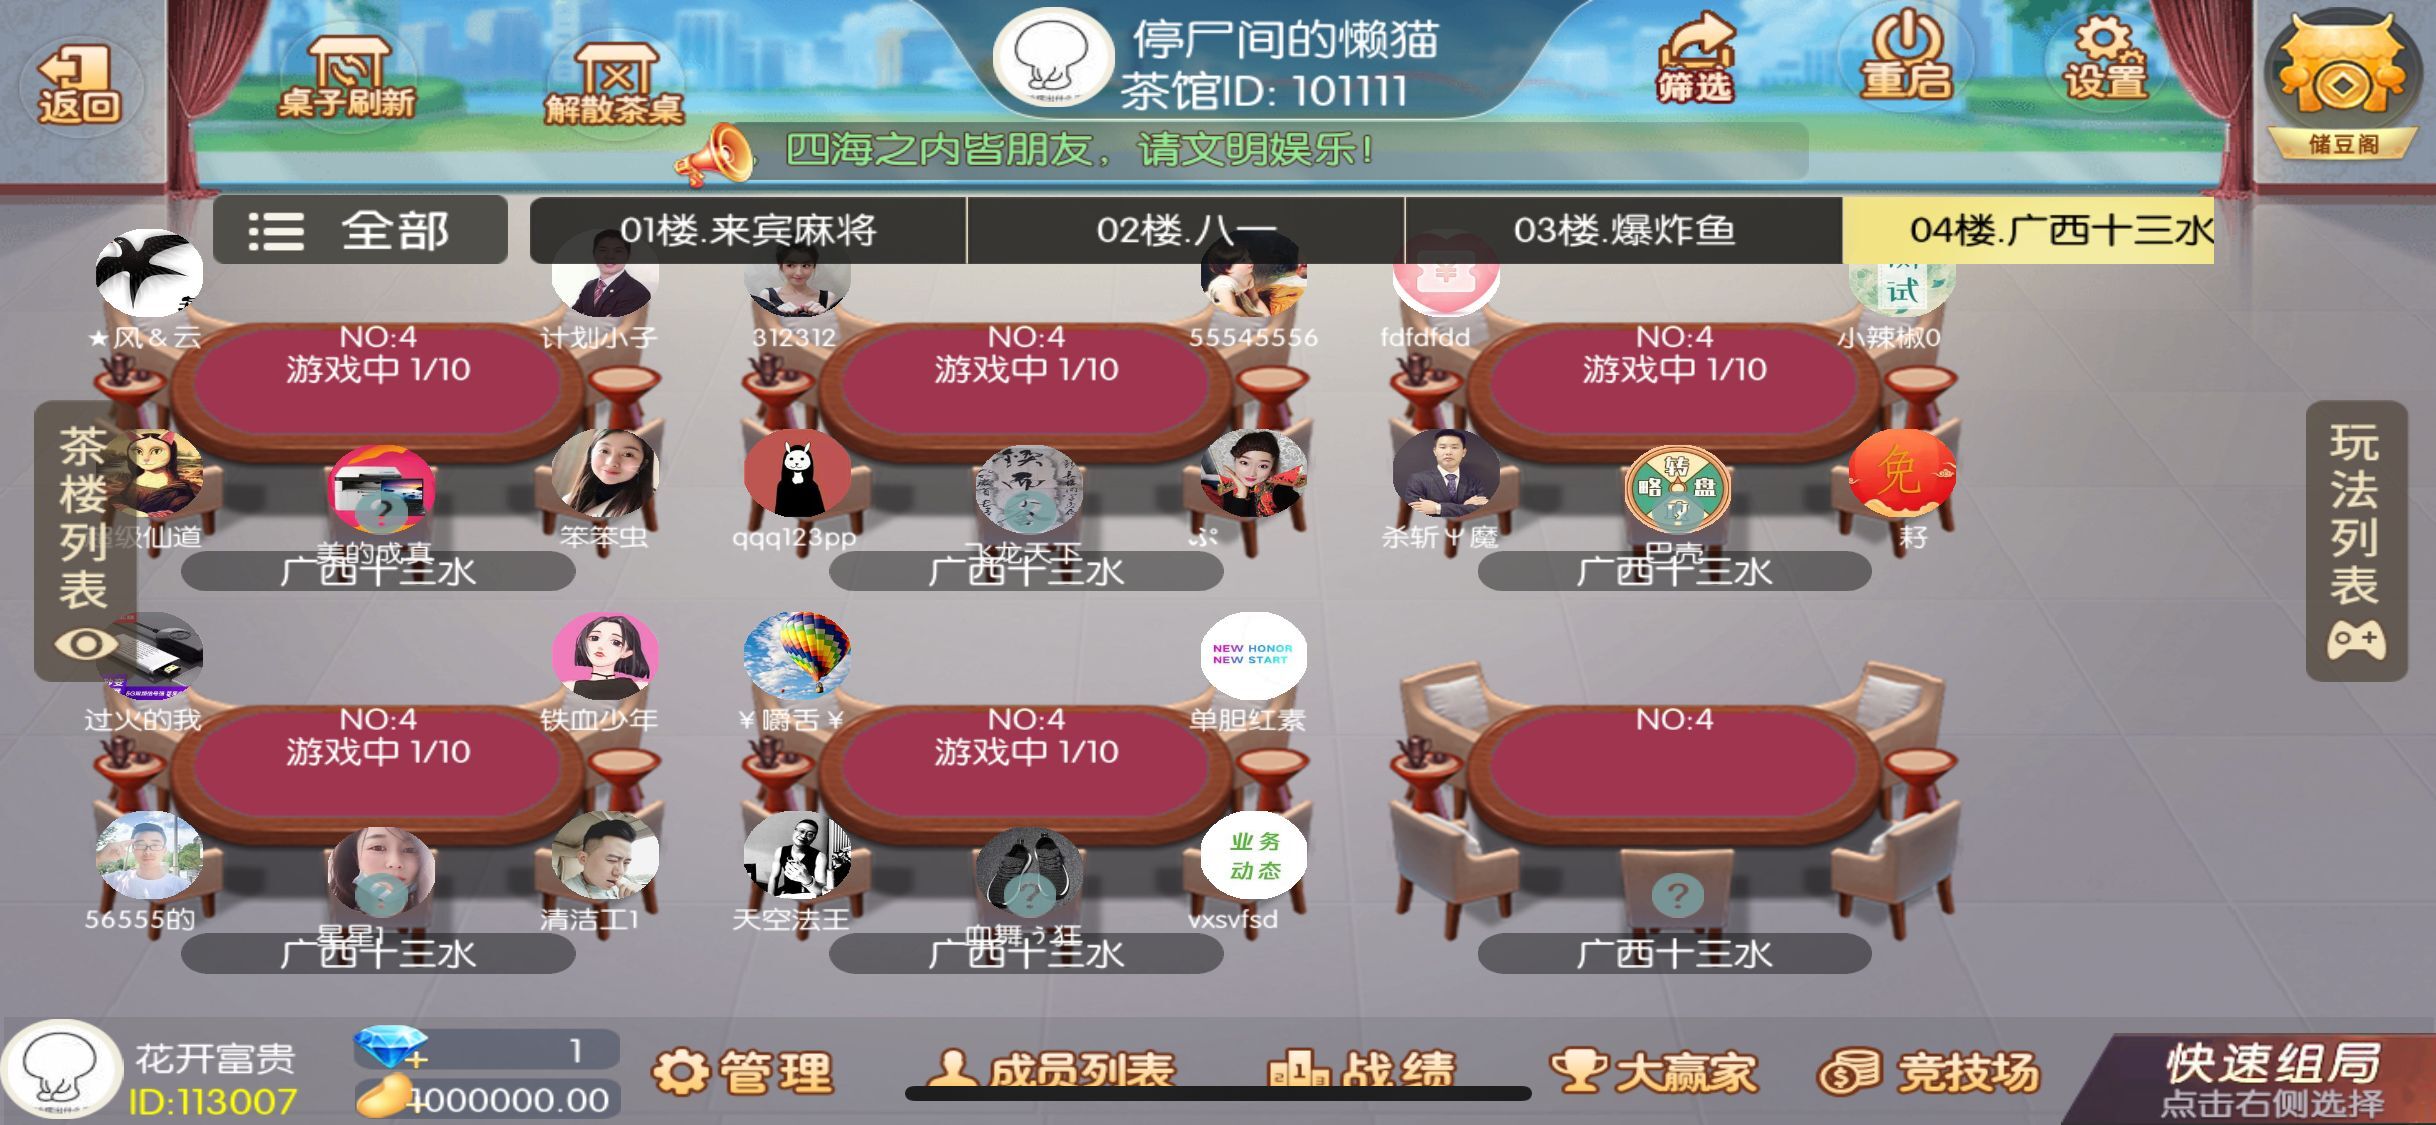 网狐系列广西地方玩法完整组件带占位机器人插图5